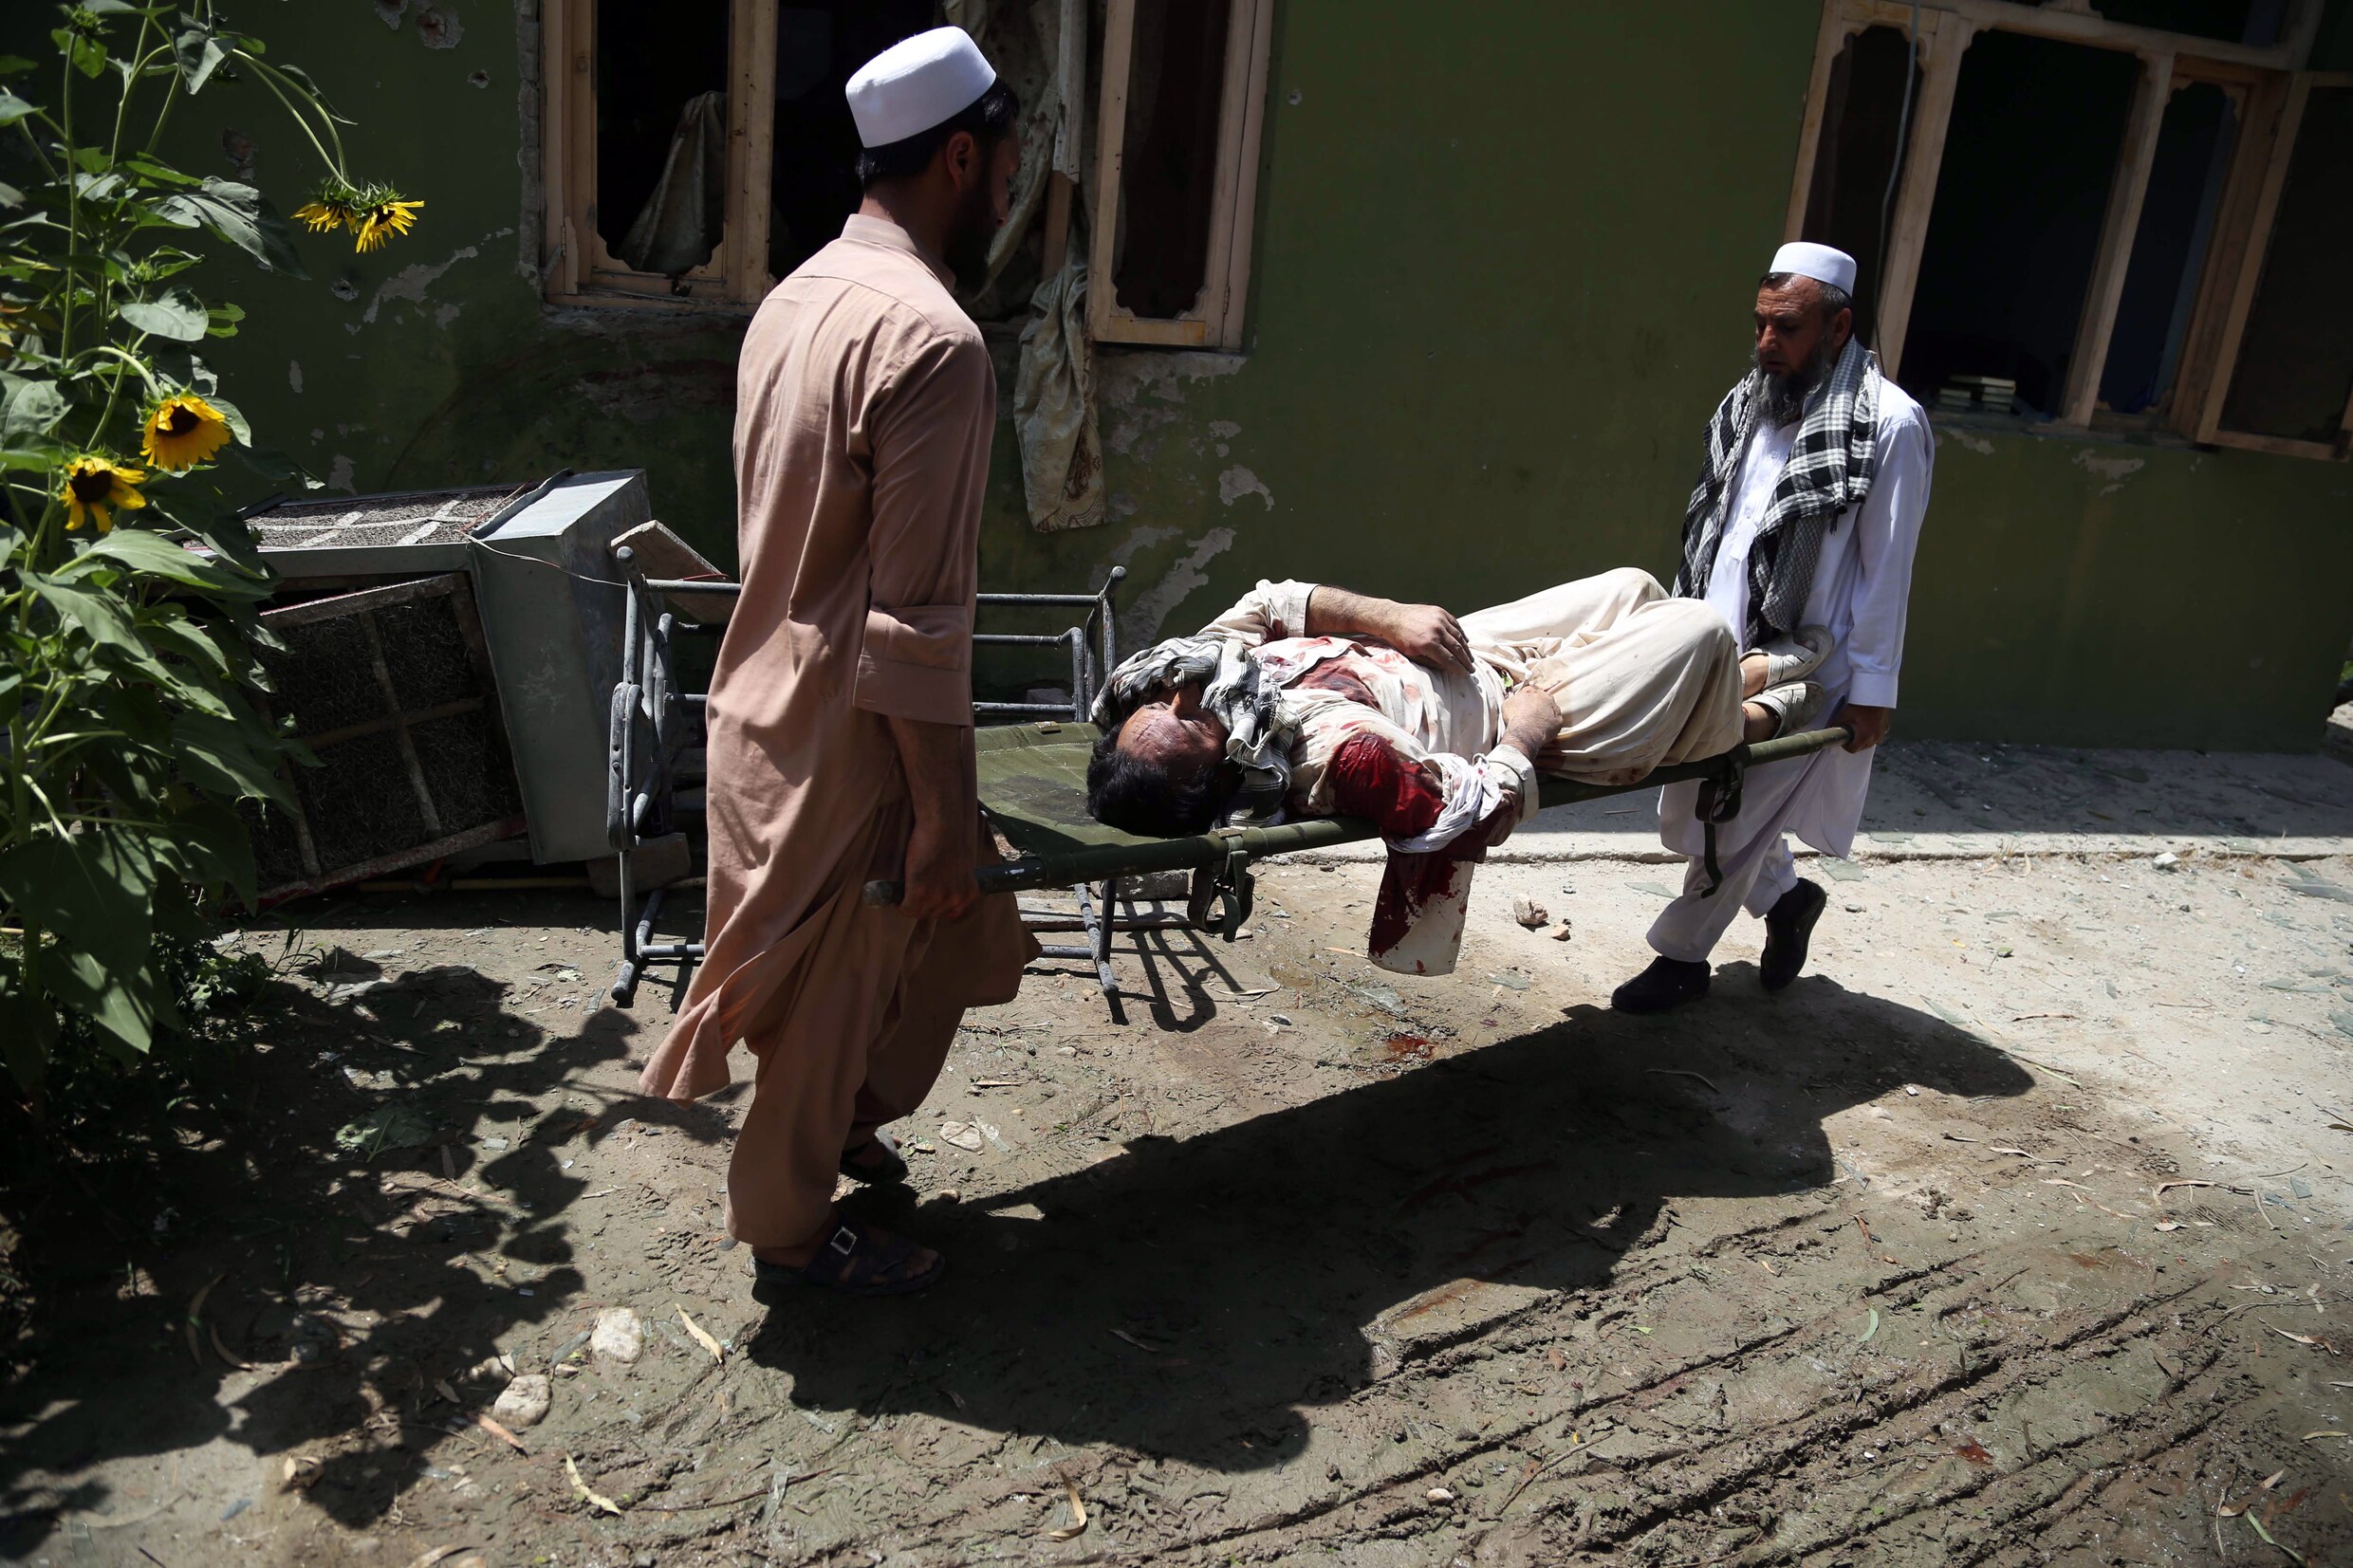 "Recordaantal Afghaanse burgers gedood in eerste helft 2018"